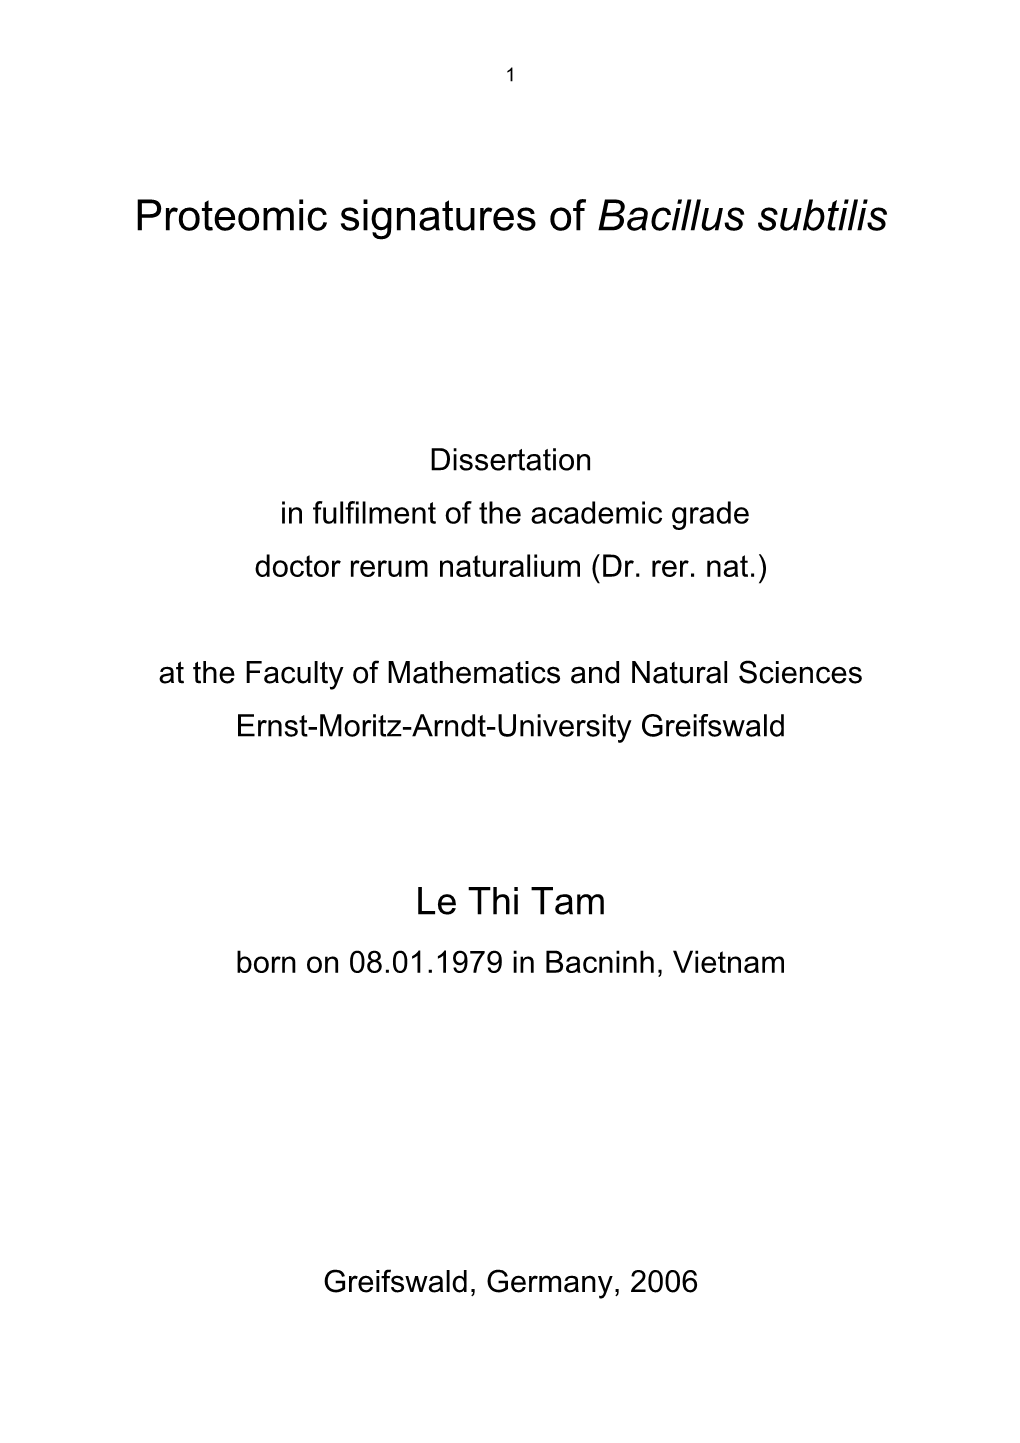 Proteomic Signatures of Bacillus Subtilis